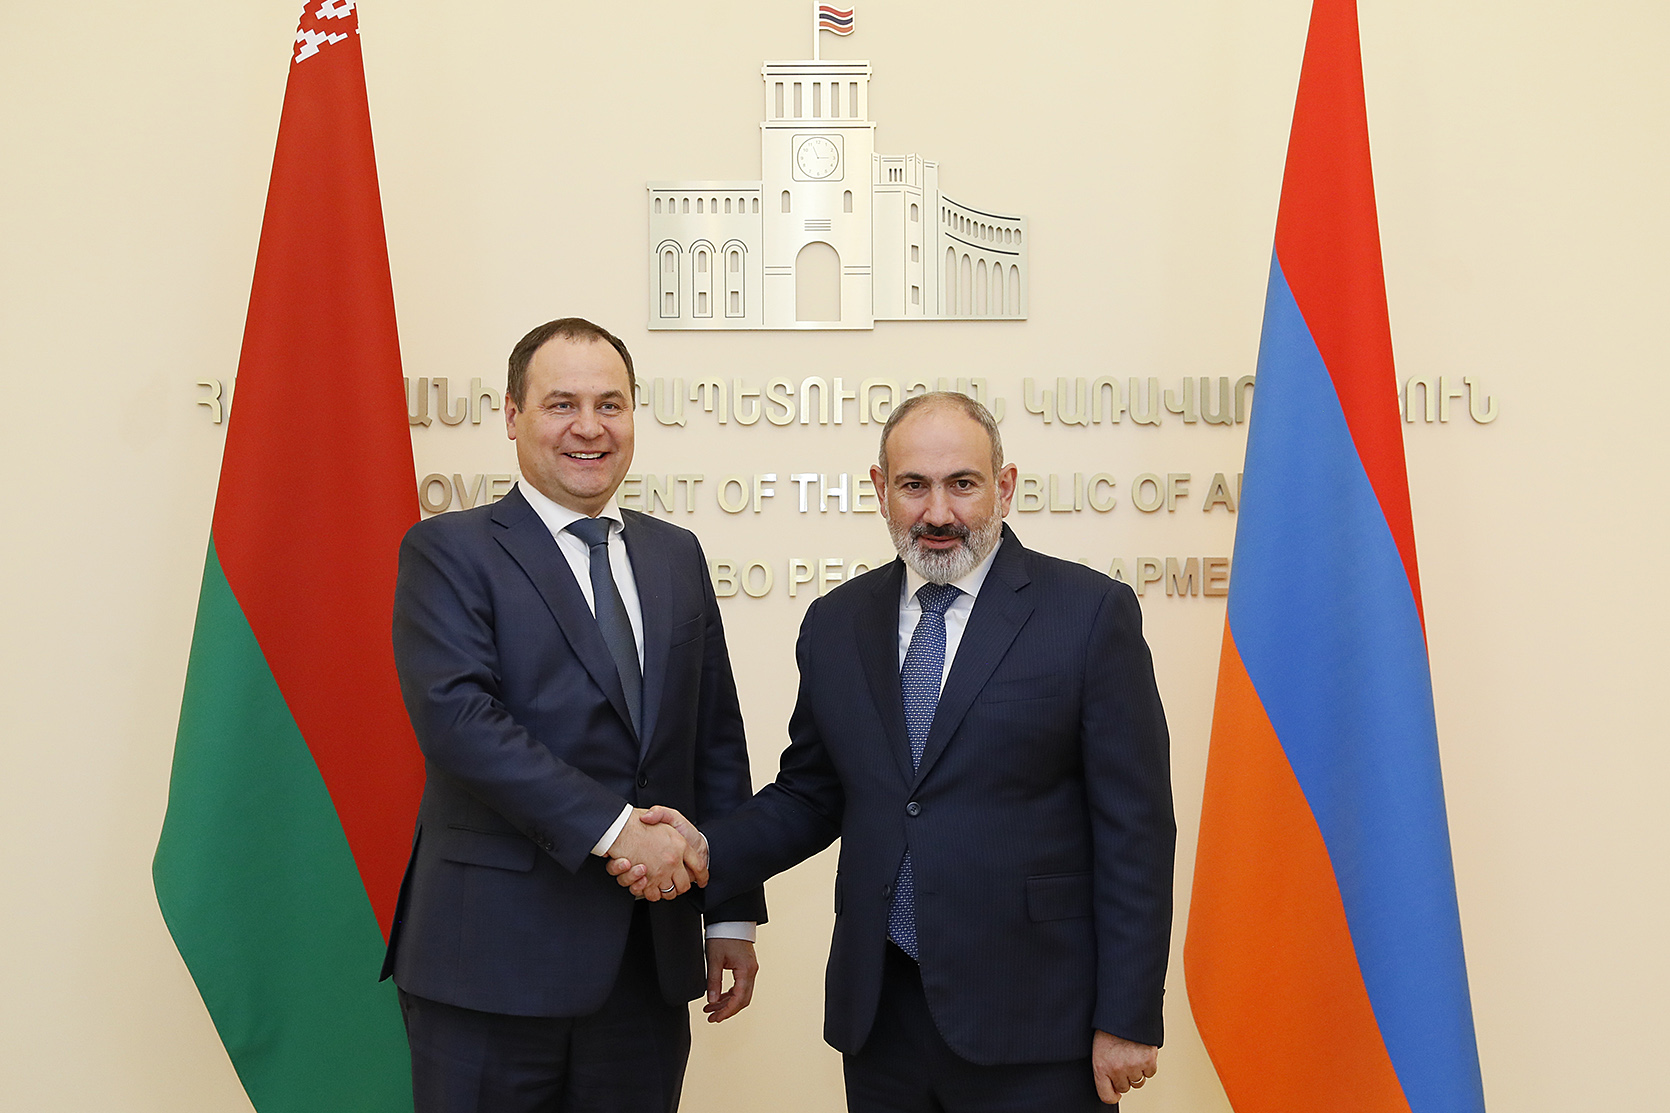 Никол Пашинян провел встречу с премьер-министром Беларуси